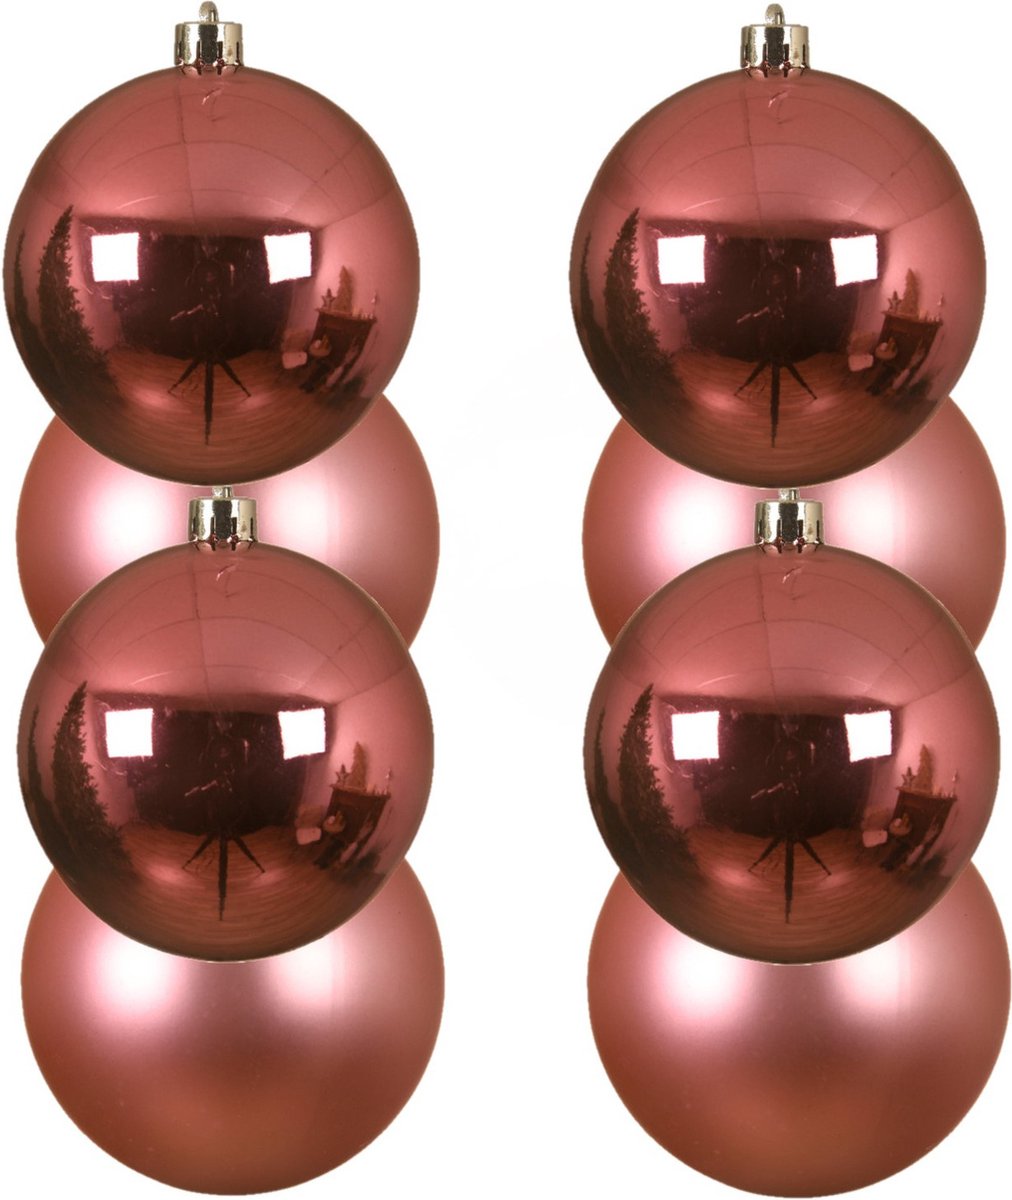 8x stuks kunststof kerstballen lippenstift roze 10 cm - Mat/glans - Onbreekbare plastic kerstballen